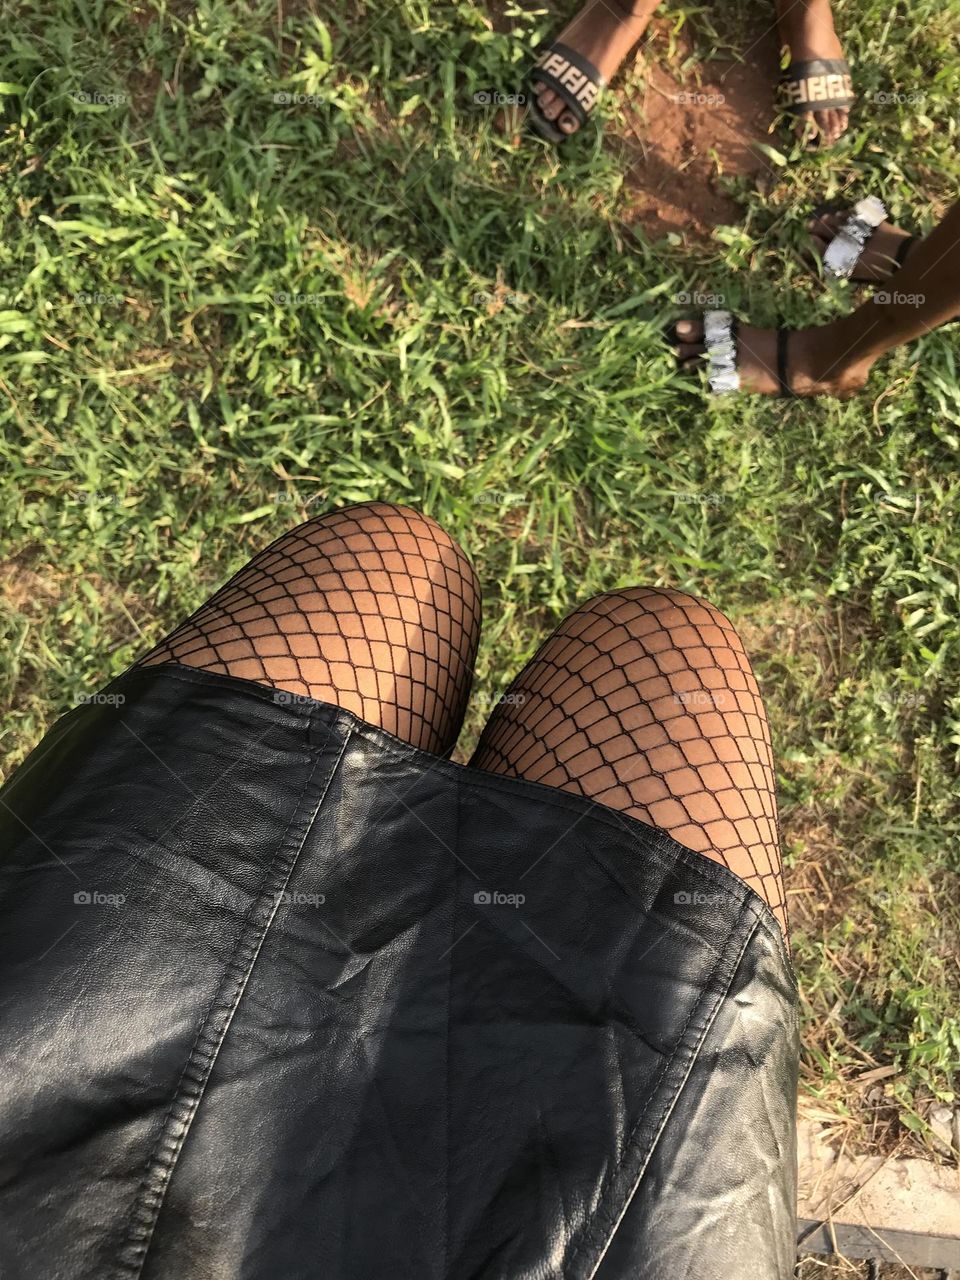 Fishnet socks with black leather skirt